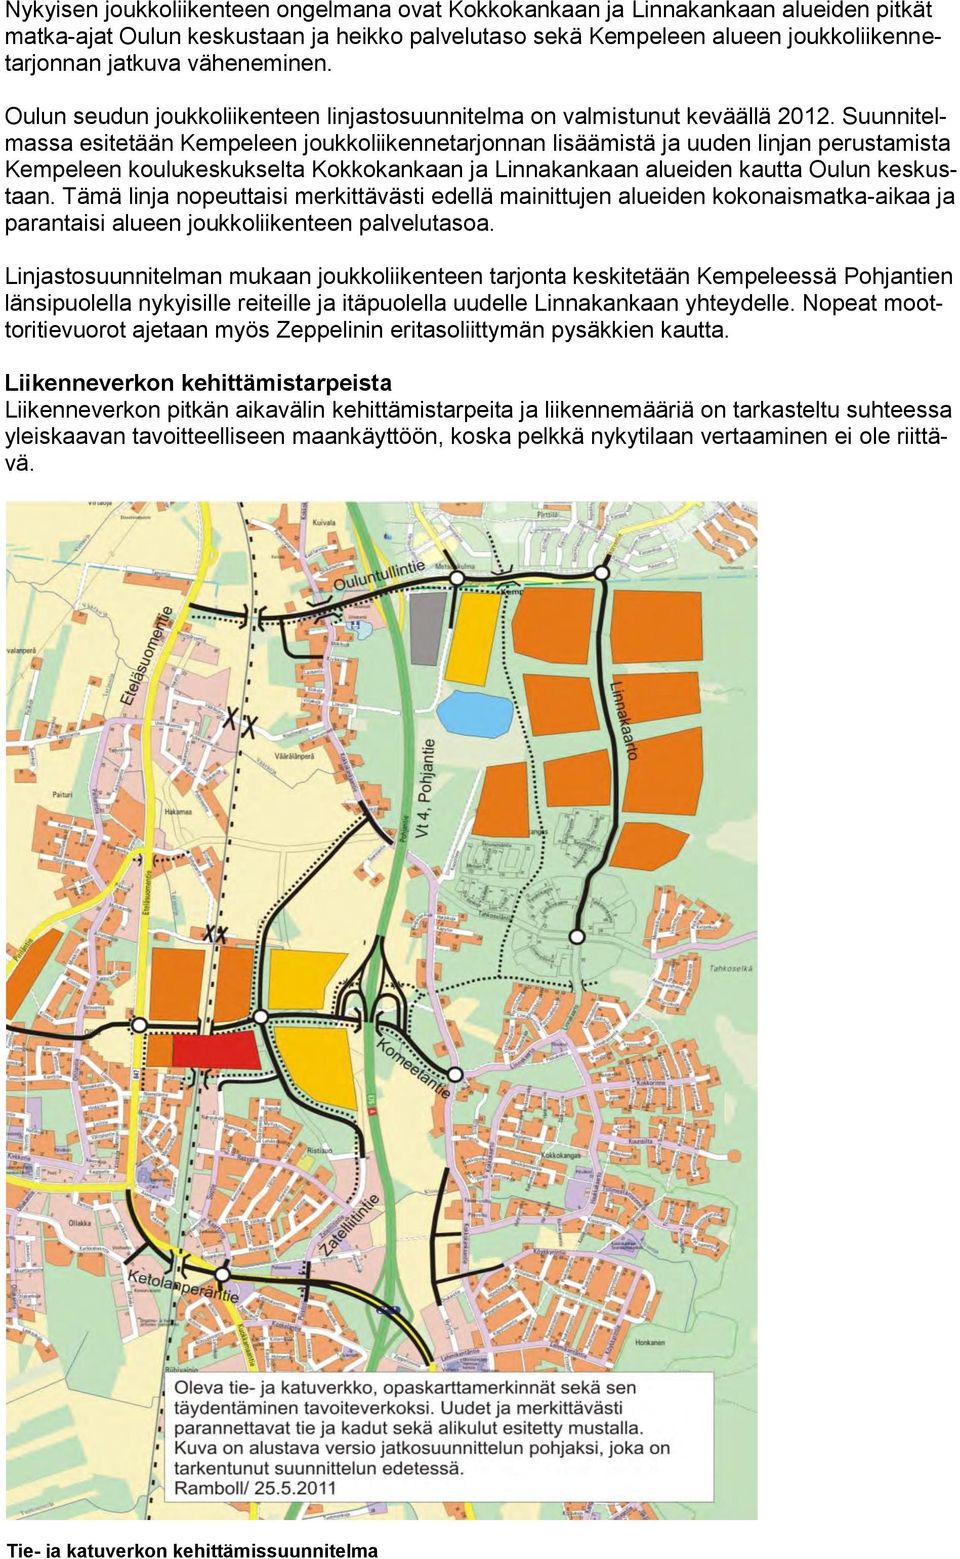 Suunnitelmassa esitetään Kempeleen joukkoliikennetarjonnan lisäämistä ja uuden linjan perustamista Kempeleen koulukeskukselta Kokkokankaan ja Linnakankaan alueiden kautta Oulun keskustaan.